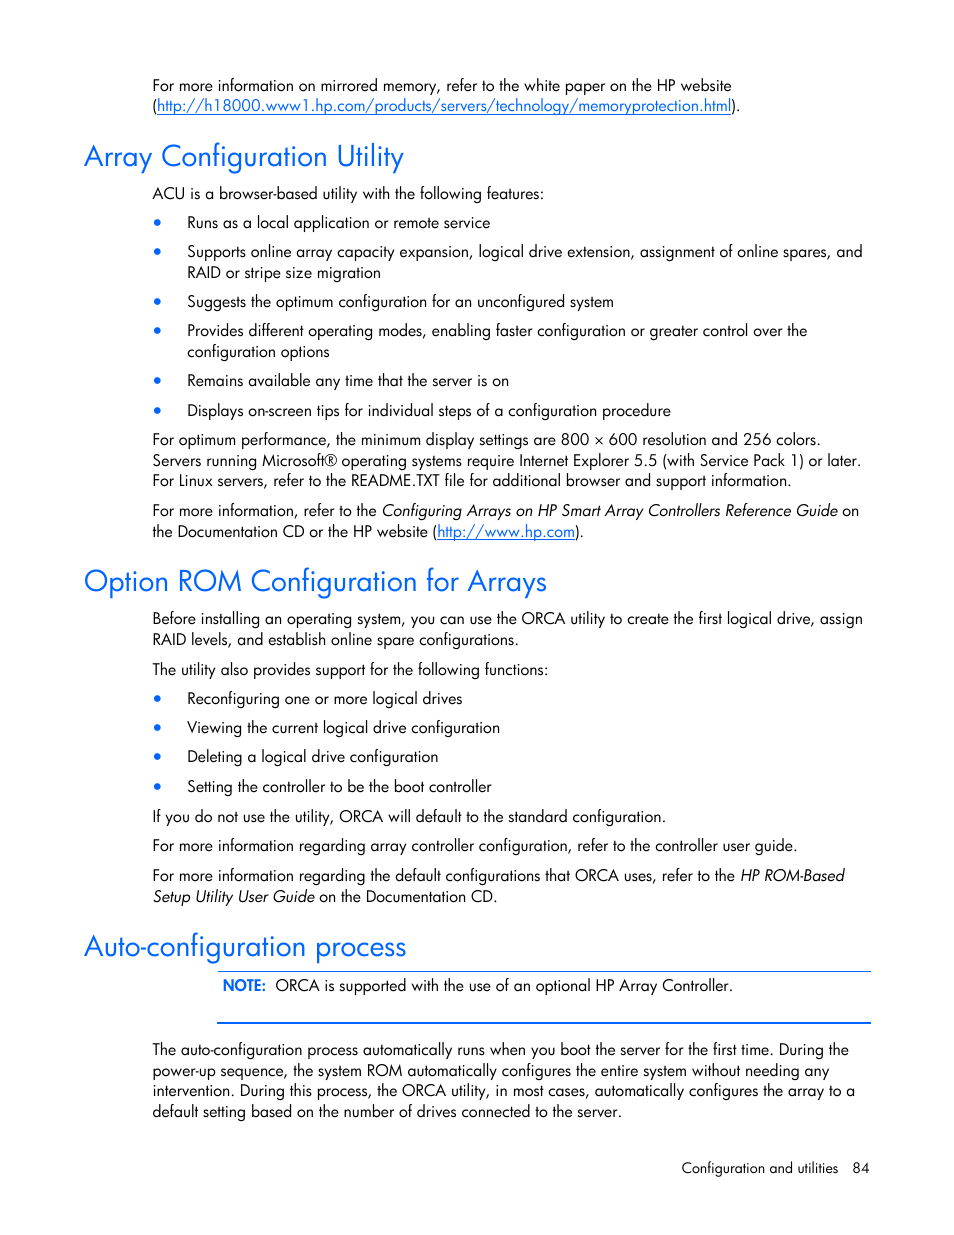 Array configuration utility, Option rom configuration for arrays,  Auto-configuration process | HP ProLiant ML370 G5 Server User Manual | Page  84 / 135 | Original mode